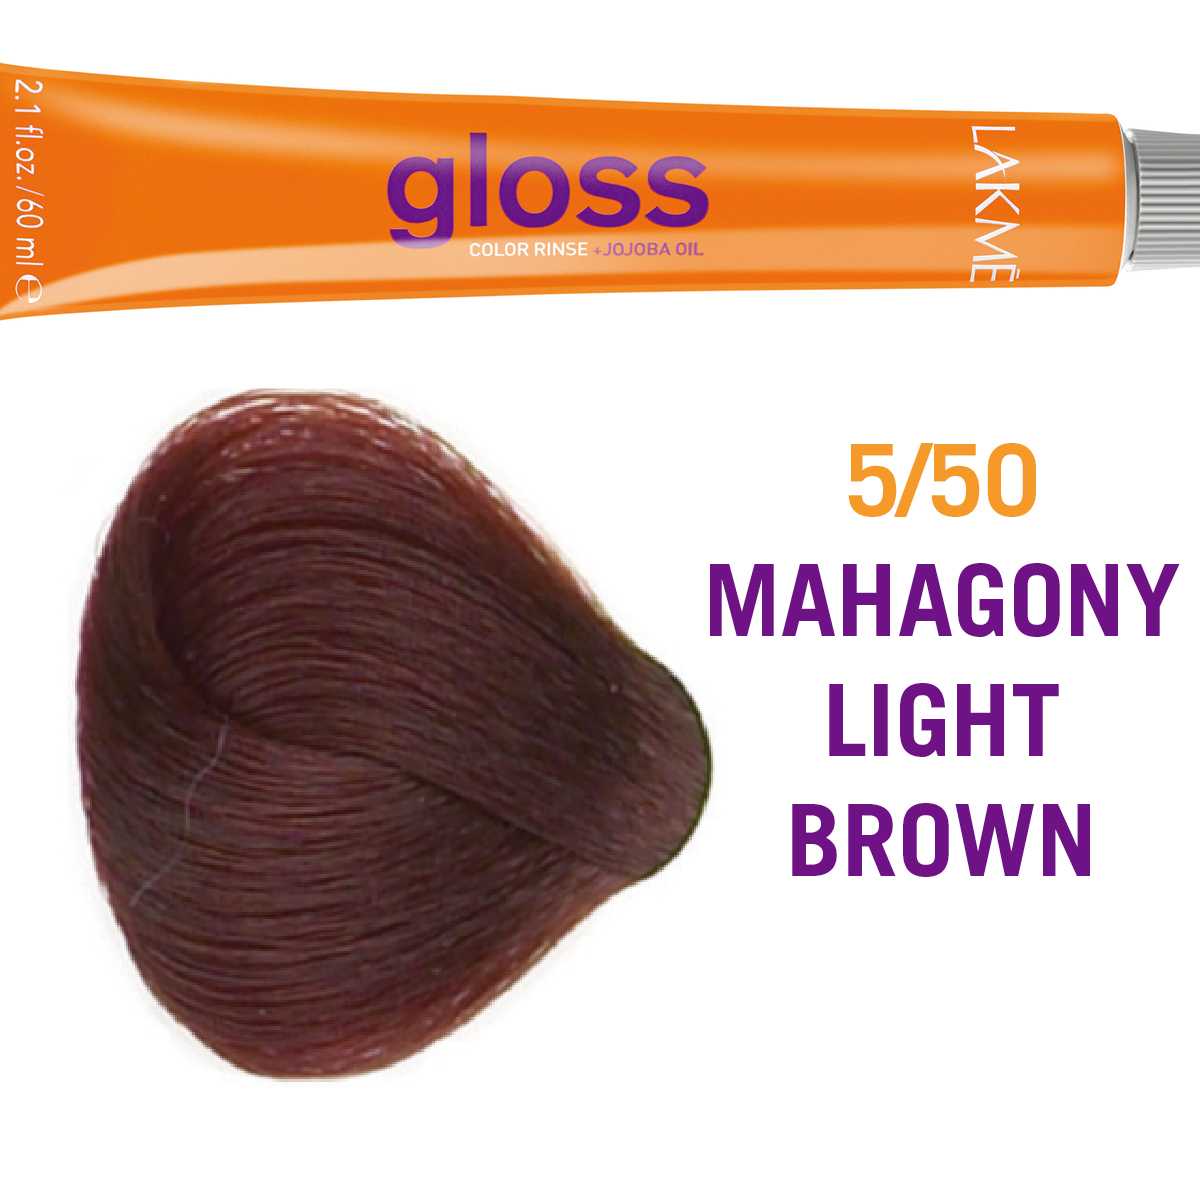 GLOSS 5/50 MAHOGANY LIGHT BROWN - Sullivan Beauty